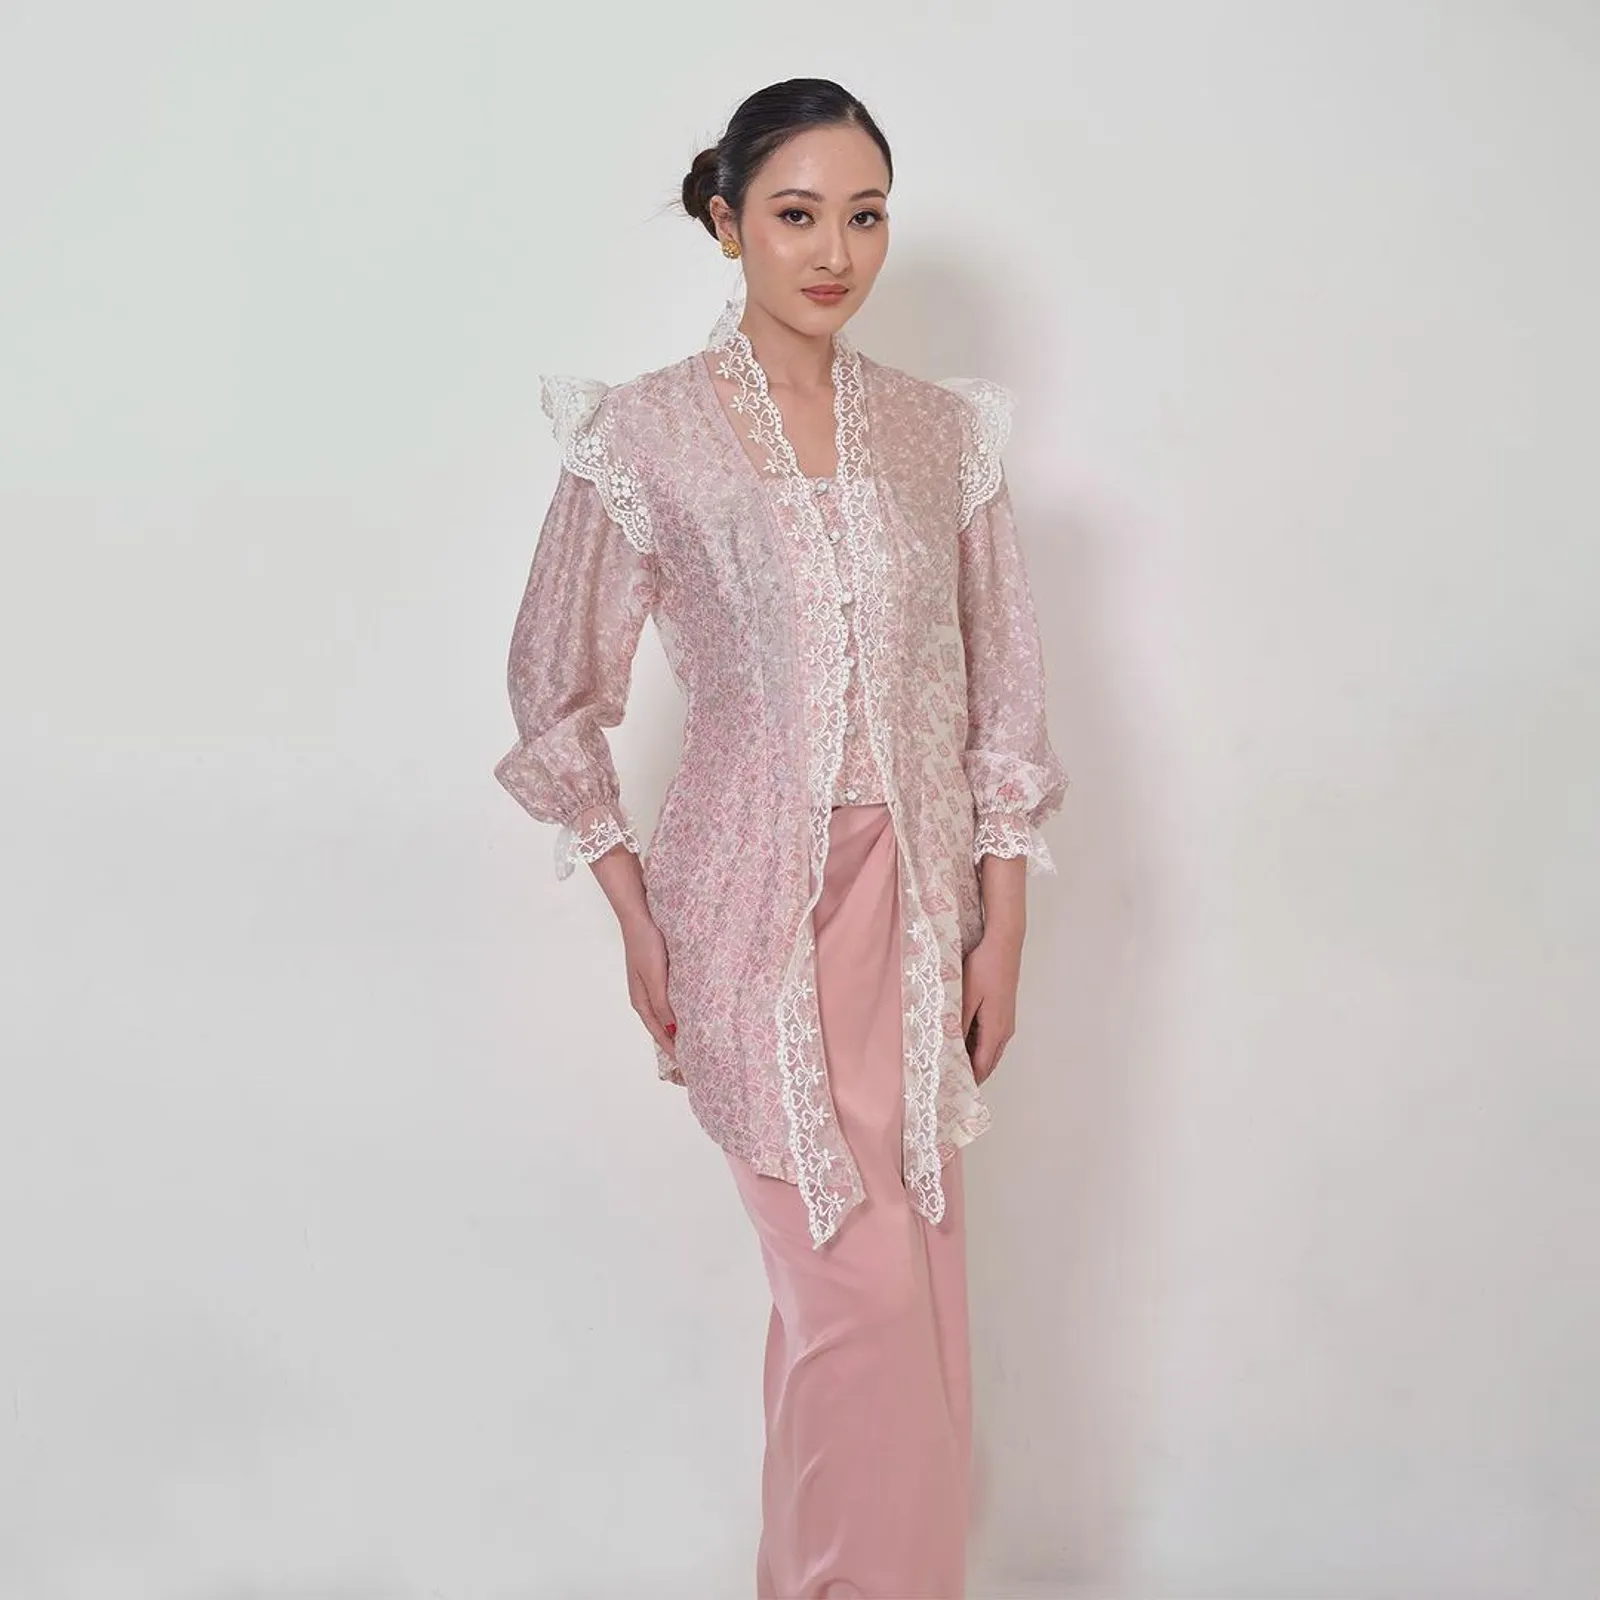 7 Model Kebaya dari Kain Batik untuk Tampil Fashionable